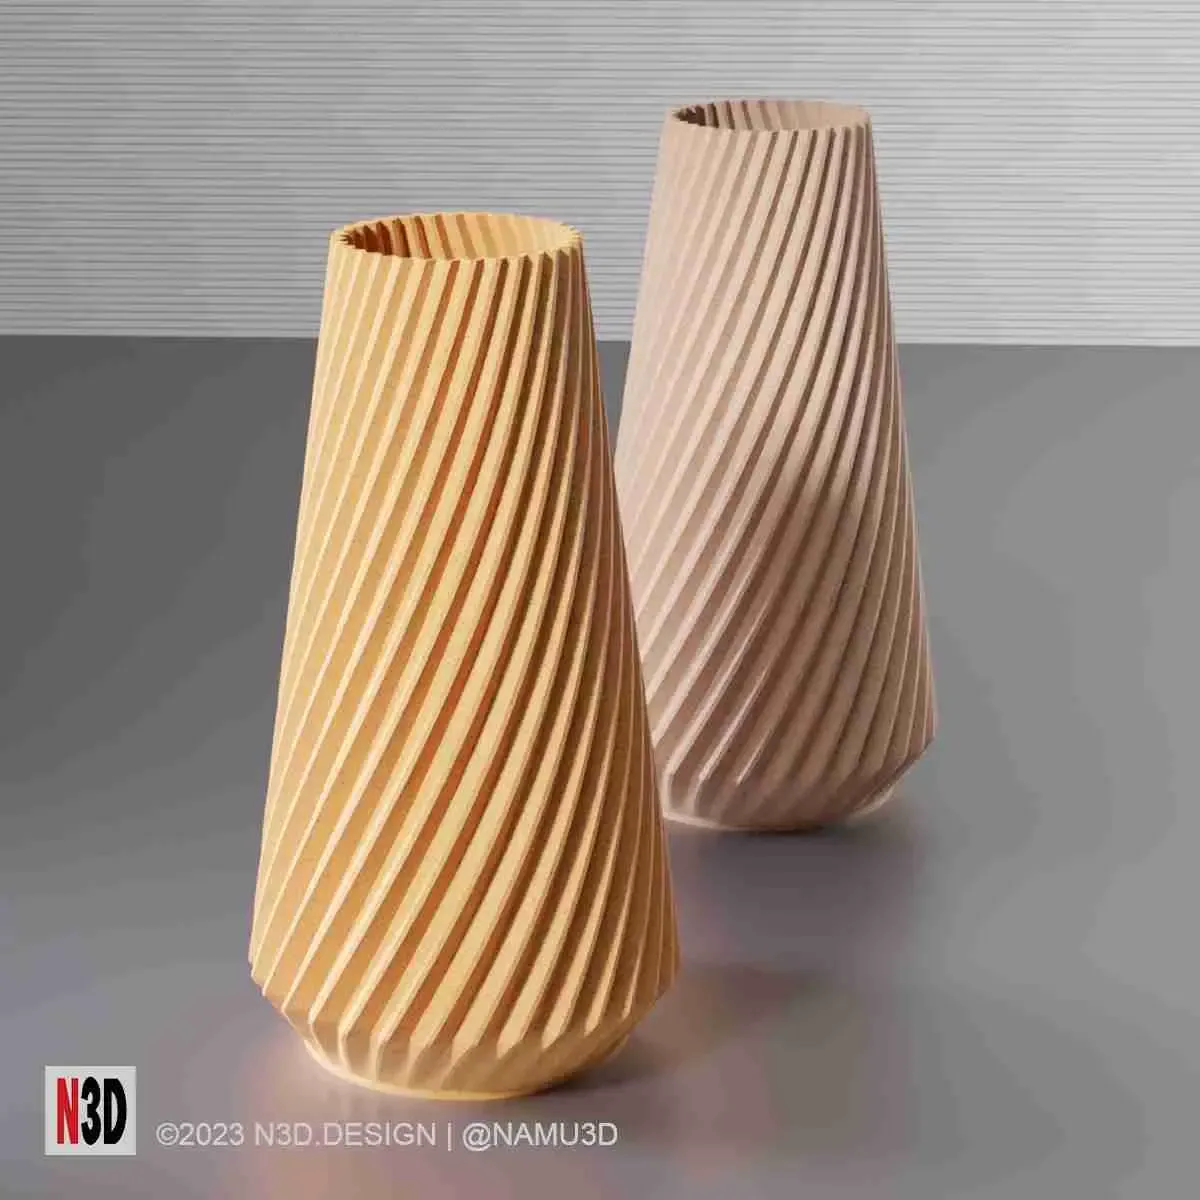 Vase 0021 B - Sharp twisted vase